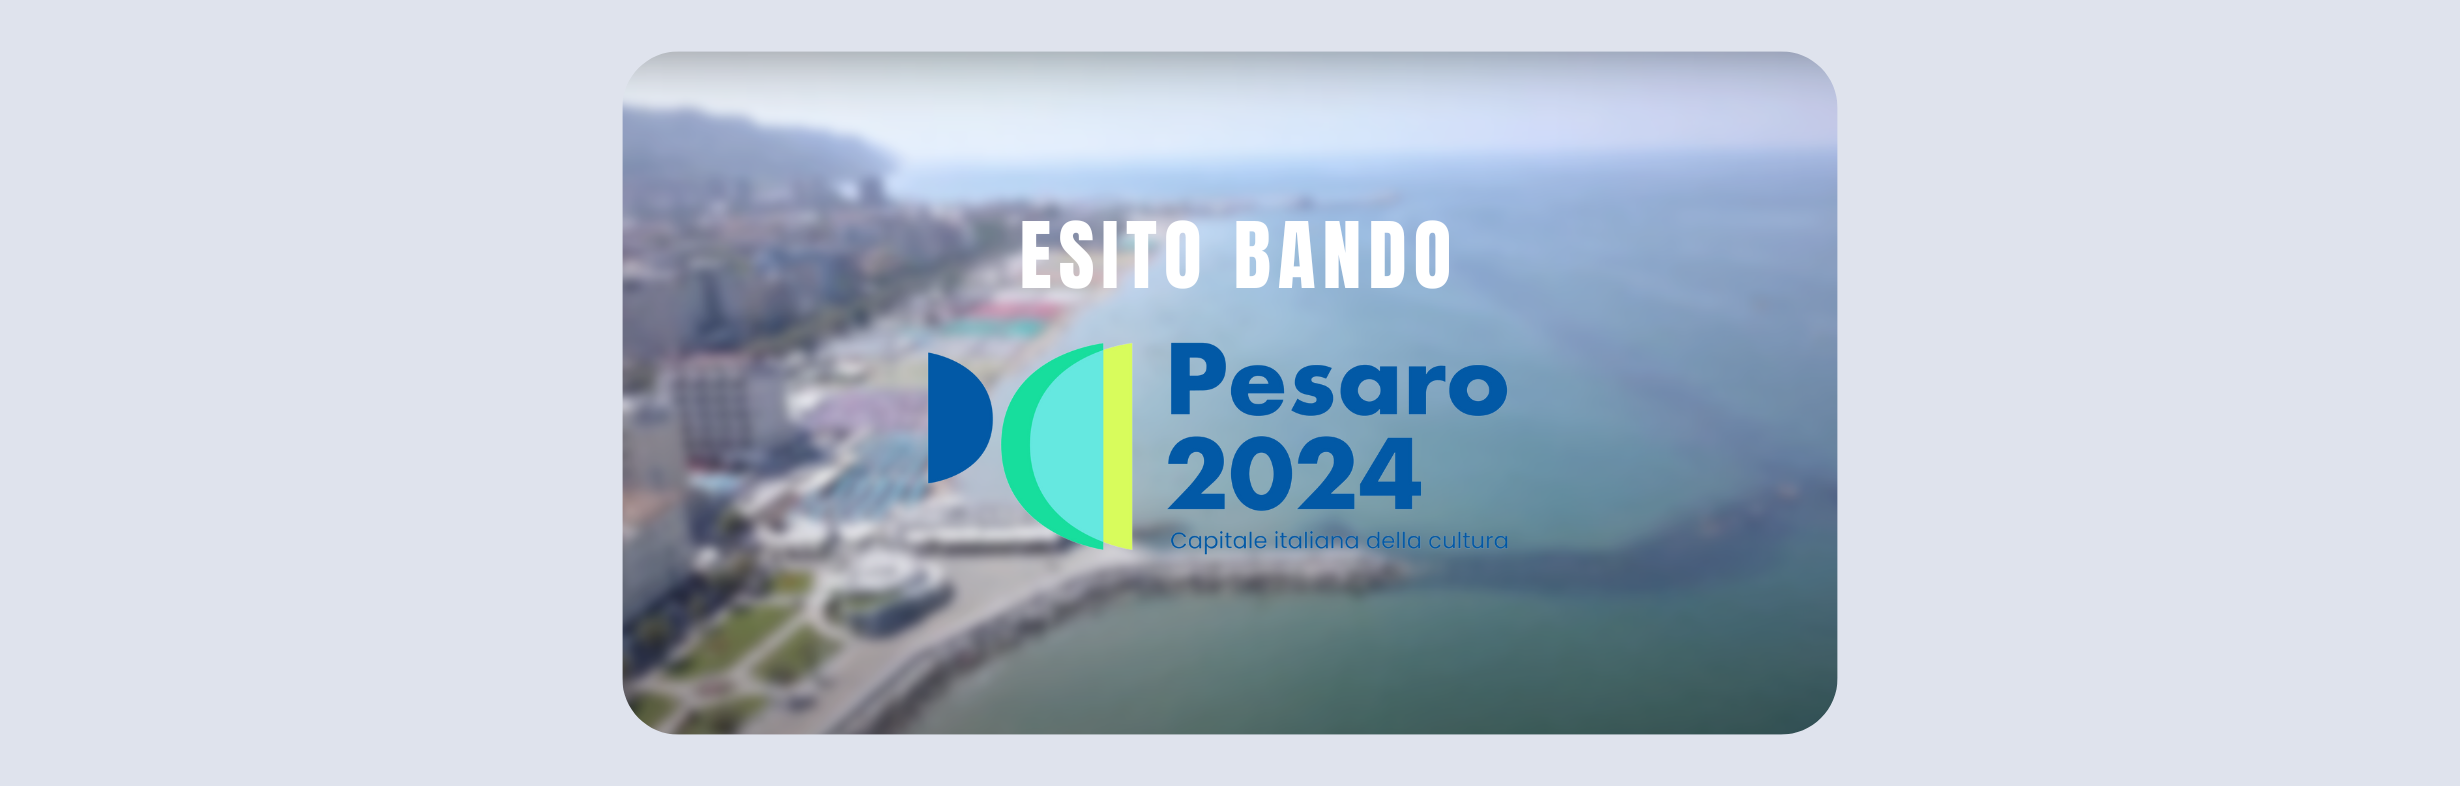 Al momento stai visualizzando Esito Bando per “PESARO CAPITALE ITALIANA DELLA CULTURA 2024”